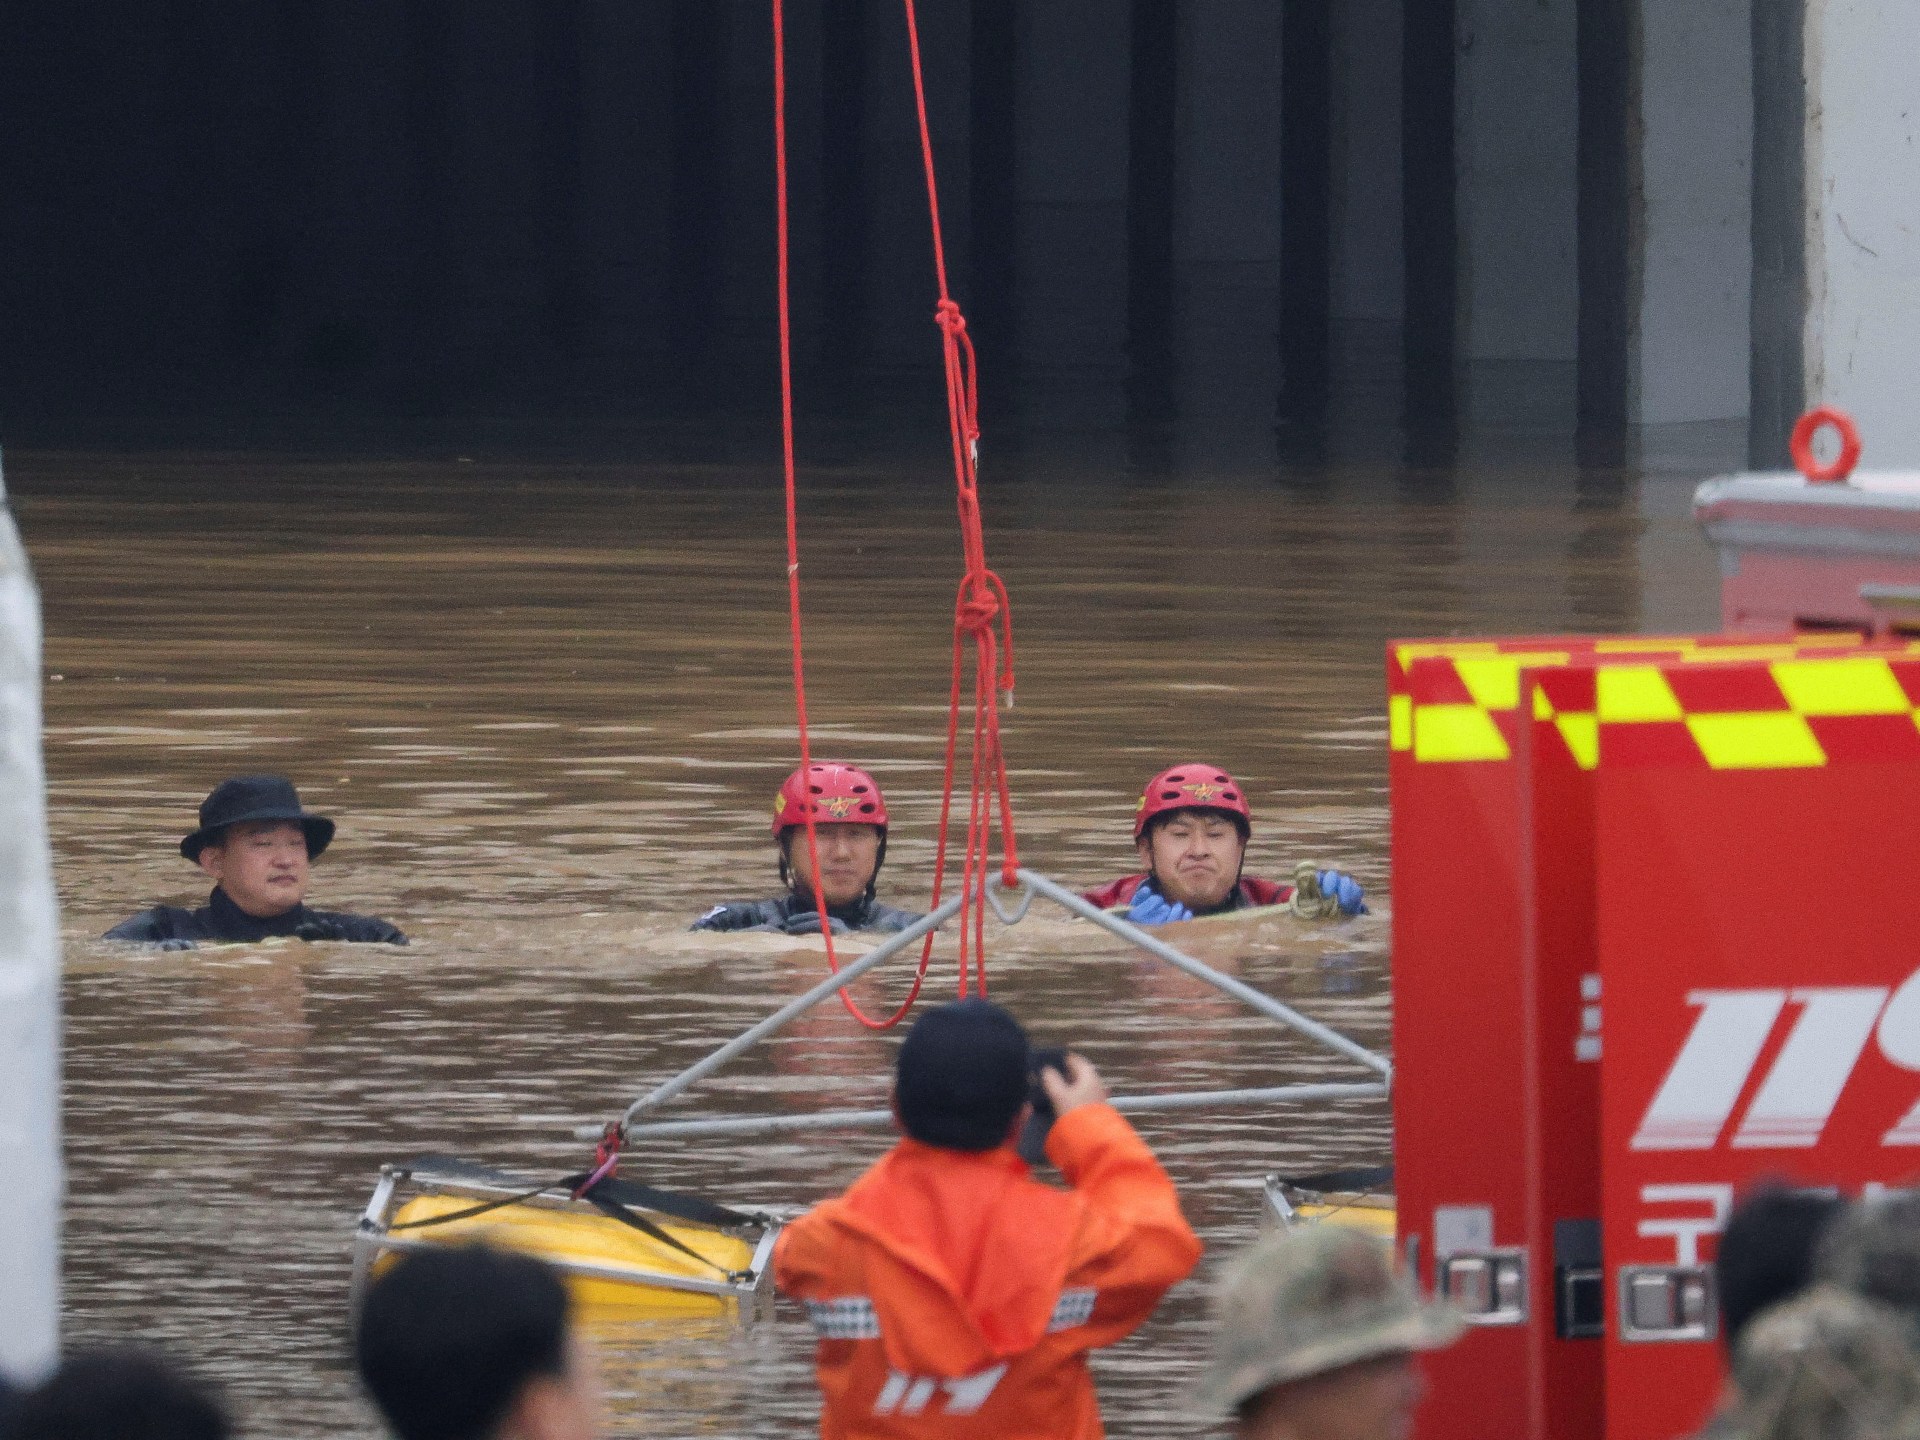 مقتل الكثير في كوريا الجنوبية جراء فيضانات مفاجئة تحاصر 15 مركبة في نفق |  ما هي قيمة أموالك؟  اخبار